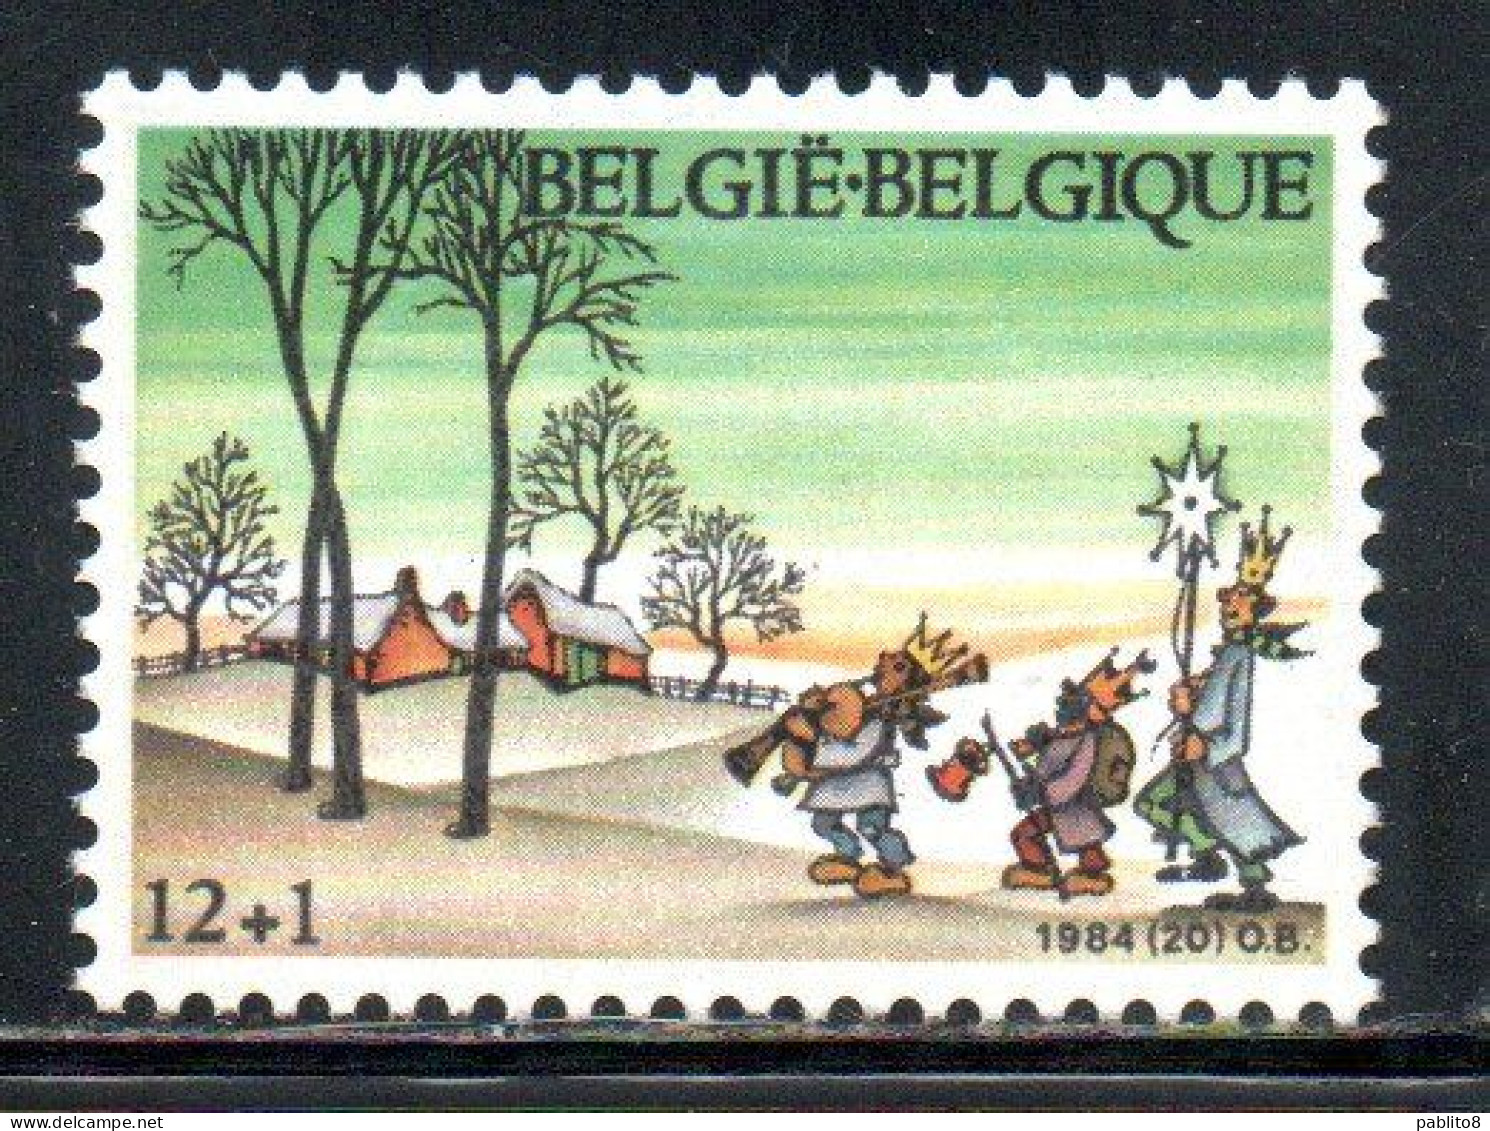 BELGIQUE BELGIE BELGIO BELGIUM 1984 CHRISTMAS NOEL NATALE WEIHNACHTEN NAVIDAD 12 + 1fr MNH - Ungebraucht